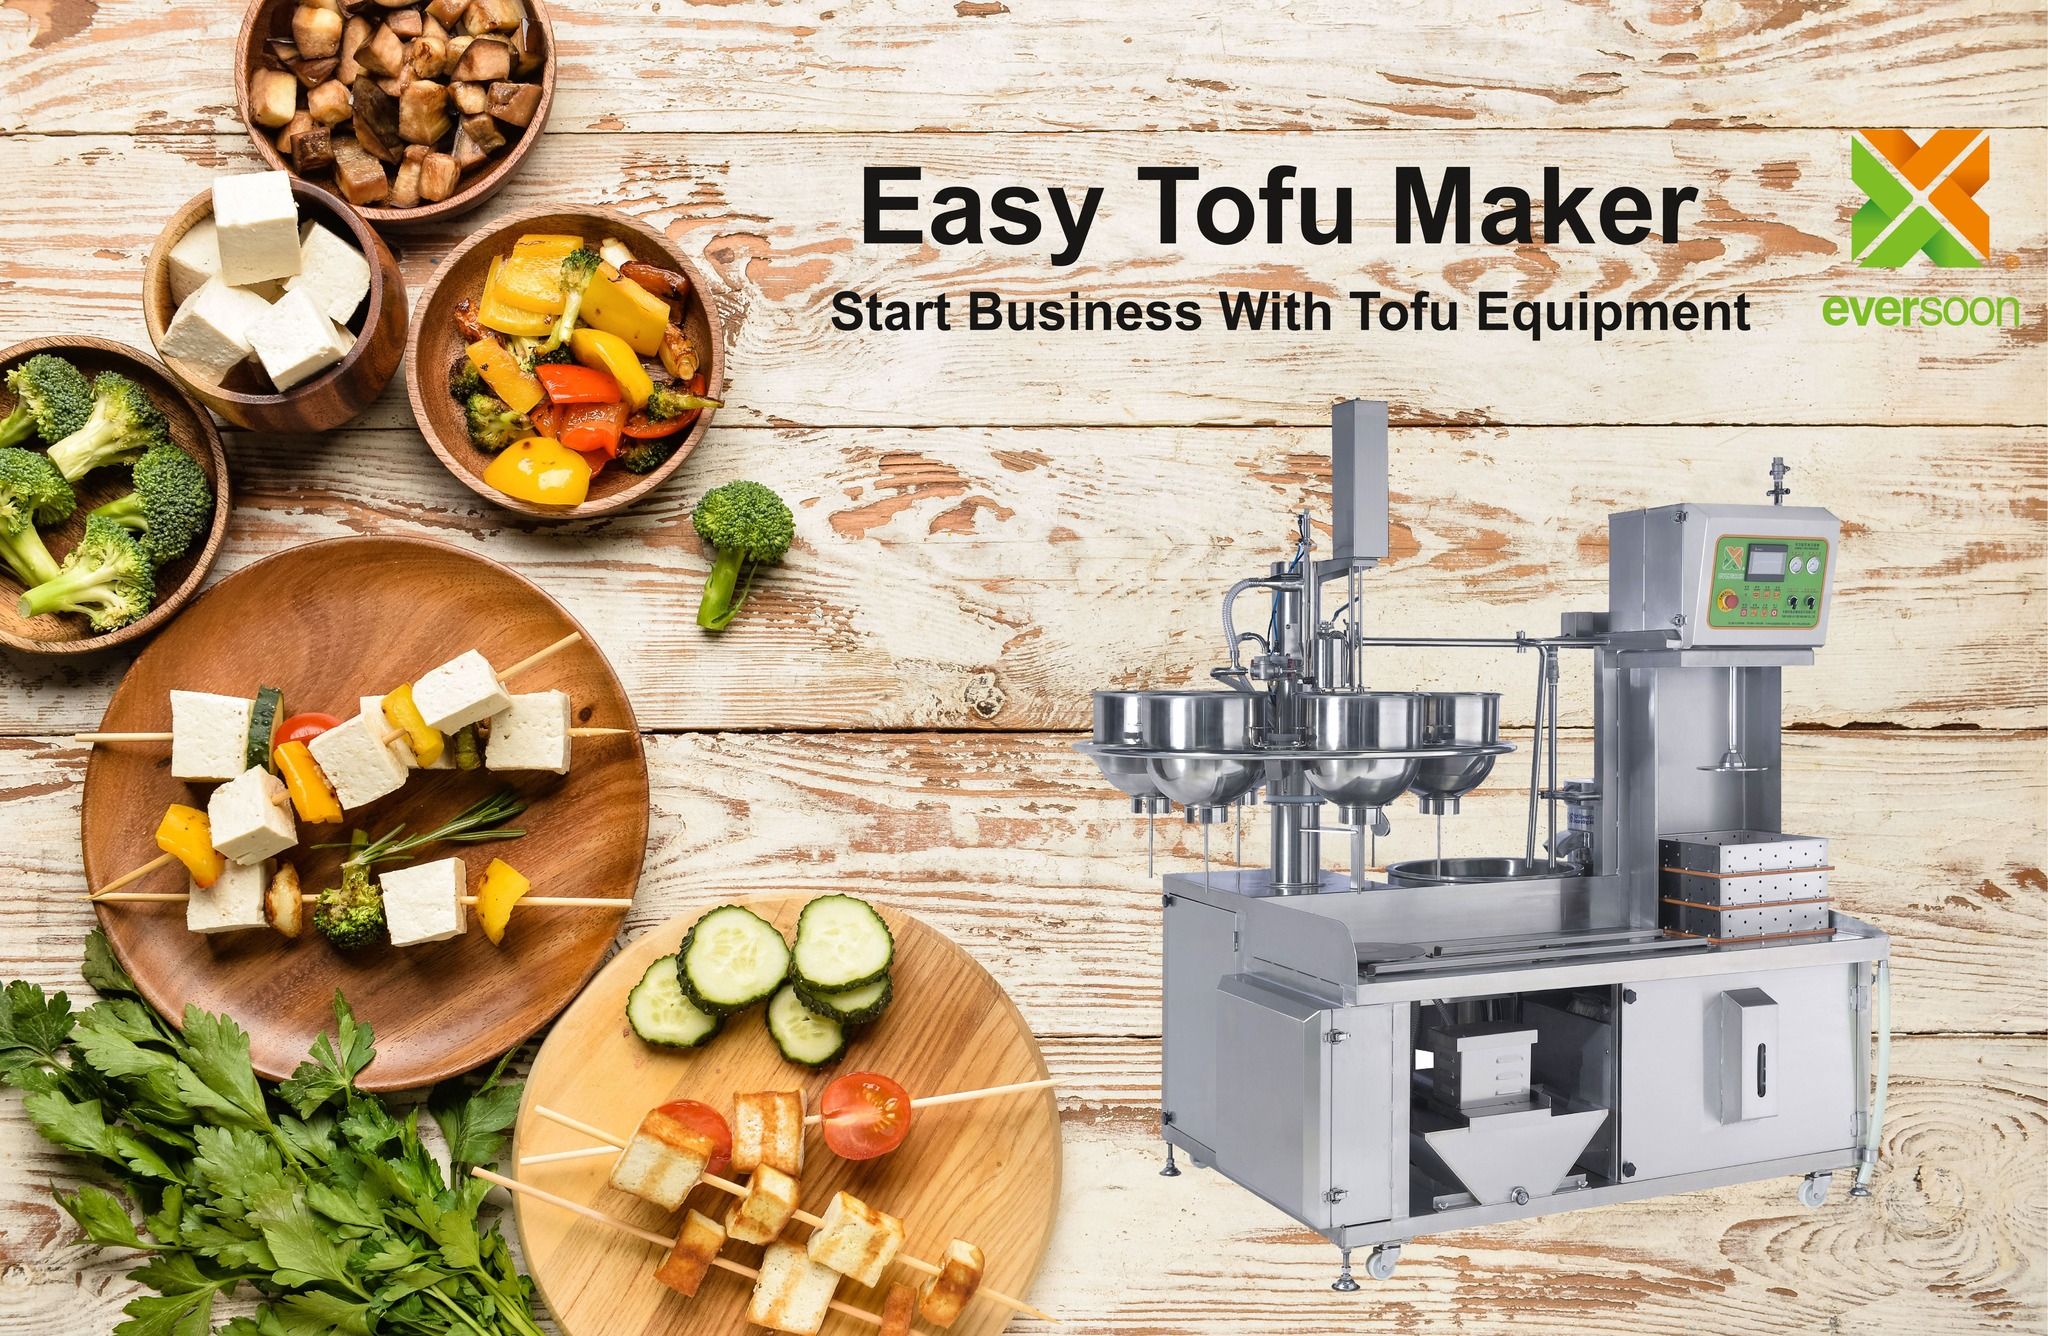 Automatisk tofu-maskine, Easy Tofu Maker, Stegt Tofu Maskine, Industriel tofu-produktion, lille tofu-maskine, Sojaproduktudstyr, sojakødsmaskine, sojamælk og tofu-maskine, tofu-udstyr, tofu-maskine, tofu maskine til salg, tofu maskine producent, tofu maskine fabrikant, tofu maskine pris, Tofu maskineri, Tofu maskineri og udstyr, Tofu Maker, tofu maker maskine, Tofu produktion, tofu produktionsudstyr, tofu-maskine, tofu-maskine pris, tofu-producenter, Tofu-produktion, tofu-produktionsudstyr, tofu-produktionsanlæg, Tofu-produktionsudstyr, tofu-produktionslinje, Tofu-produktionslinje pris, tofumaskine, automatisk tofu-maskine, vegansk kødmaskine, vegansk kødproduktionslinje, grøntsagstofumaskiner og udstyr, kommerciel tofu-maskine, automatisk sojamælksmaskine, automatisk sojamælksmaskine, Easy Tofu Maker, produktion af sojamælk, Soy Drink Machine, sojamælk og tofu fremstilling kommerciel sojamælk maskine, sojamælk og tofu fremstilling maskine, Sojamælk Kogemaskine, sojamælk maskine, Sojamælk maskine lavet i Taiwan, Sojamælk maskineri, Sojamælk maskineri og udstyr, sojamælk maskine, Sojamælk fremstilling maskine, sojamælk producenter, Sojamælksproduktion, udstyr til sojamælksproduktion, Sojamælksproduktionslinje, sojamælksmaskine, pris på sojamælksmaskine, sojabønnebehandlingsmaskine, sojamaskine, sojamælk og tofu-maskine, kommerciel sojamælksmaskine, kommerciel sojamaskine, sojamælksmaskine kommerciel, Sojamælk kedel til erhvervsmæssig brug, Sojamælk kværn til erhvervsmæssig brug, Sojamælk maskine til erhvervsmæssig brug, sojamælksmaskiner til erhvervsmæssig brug, butik sojamælk produktionsudstyr